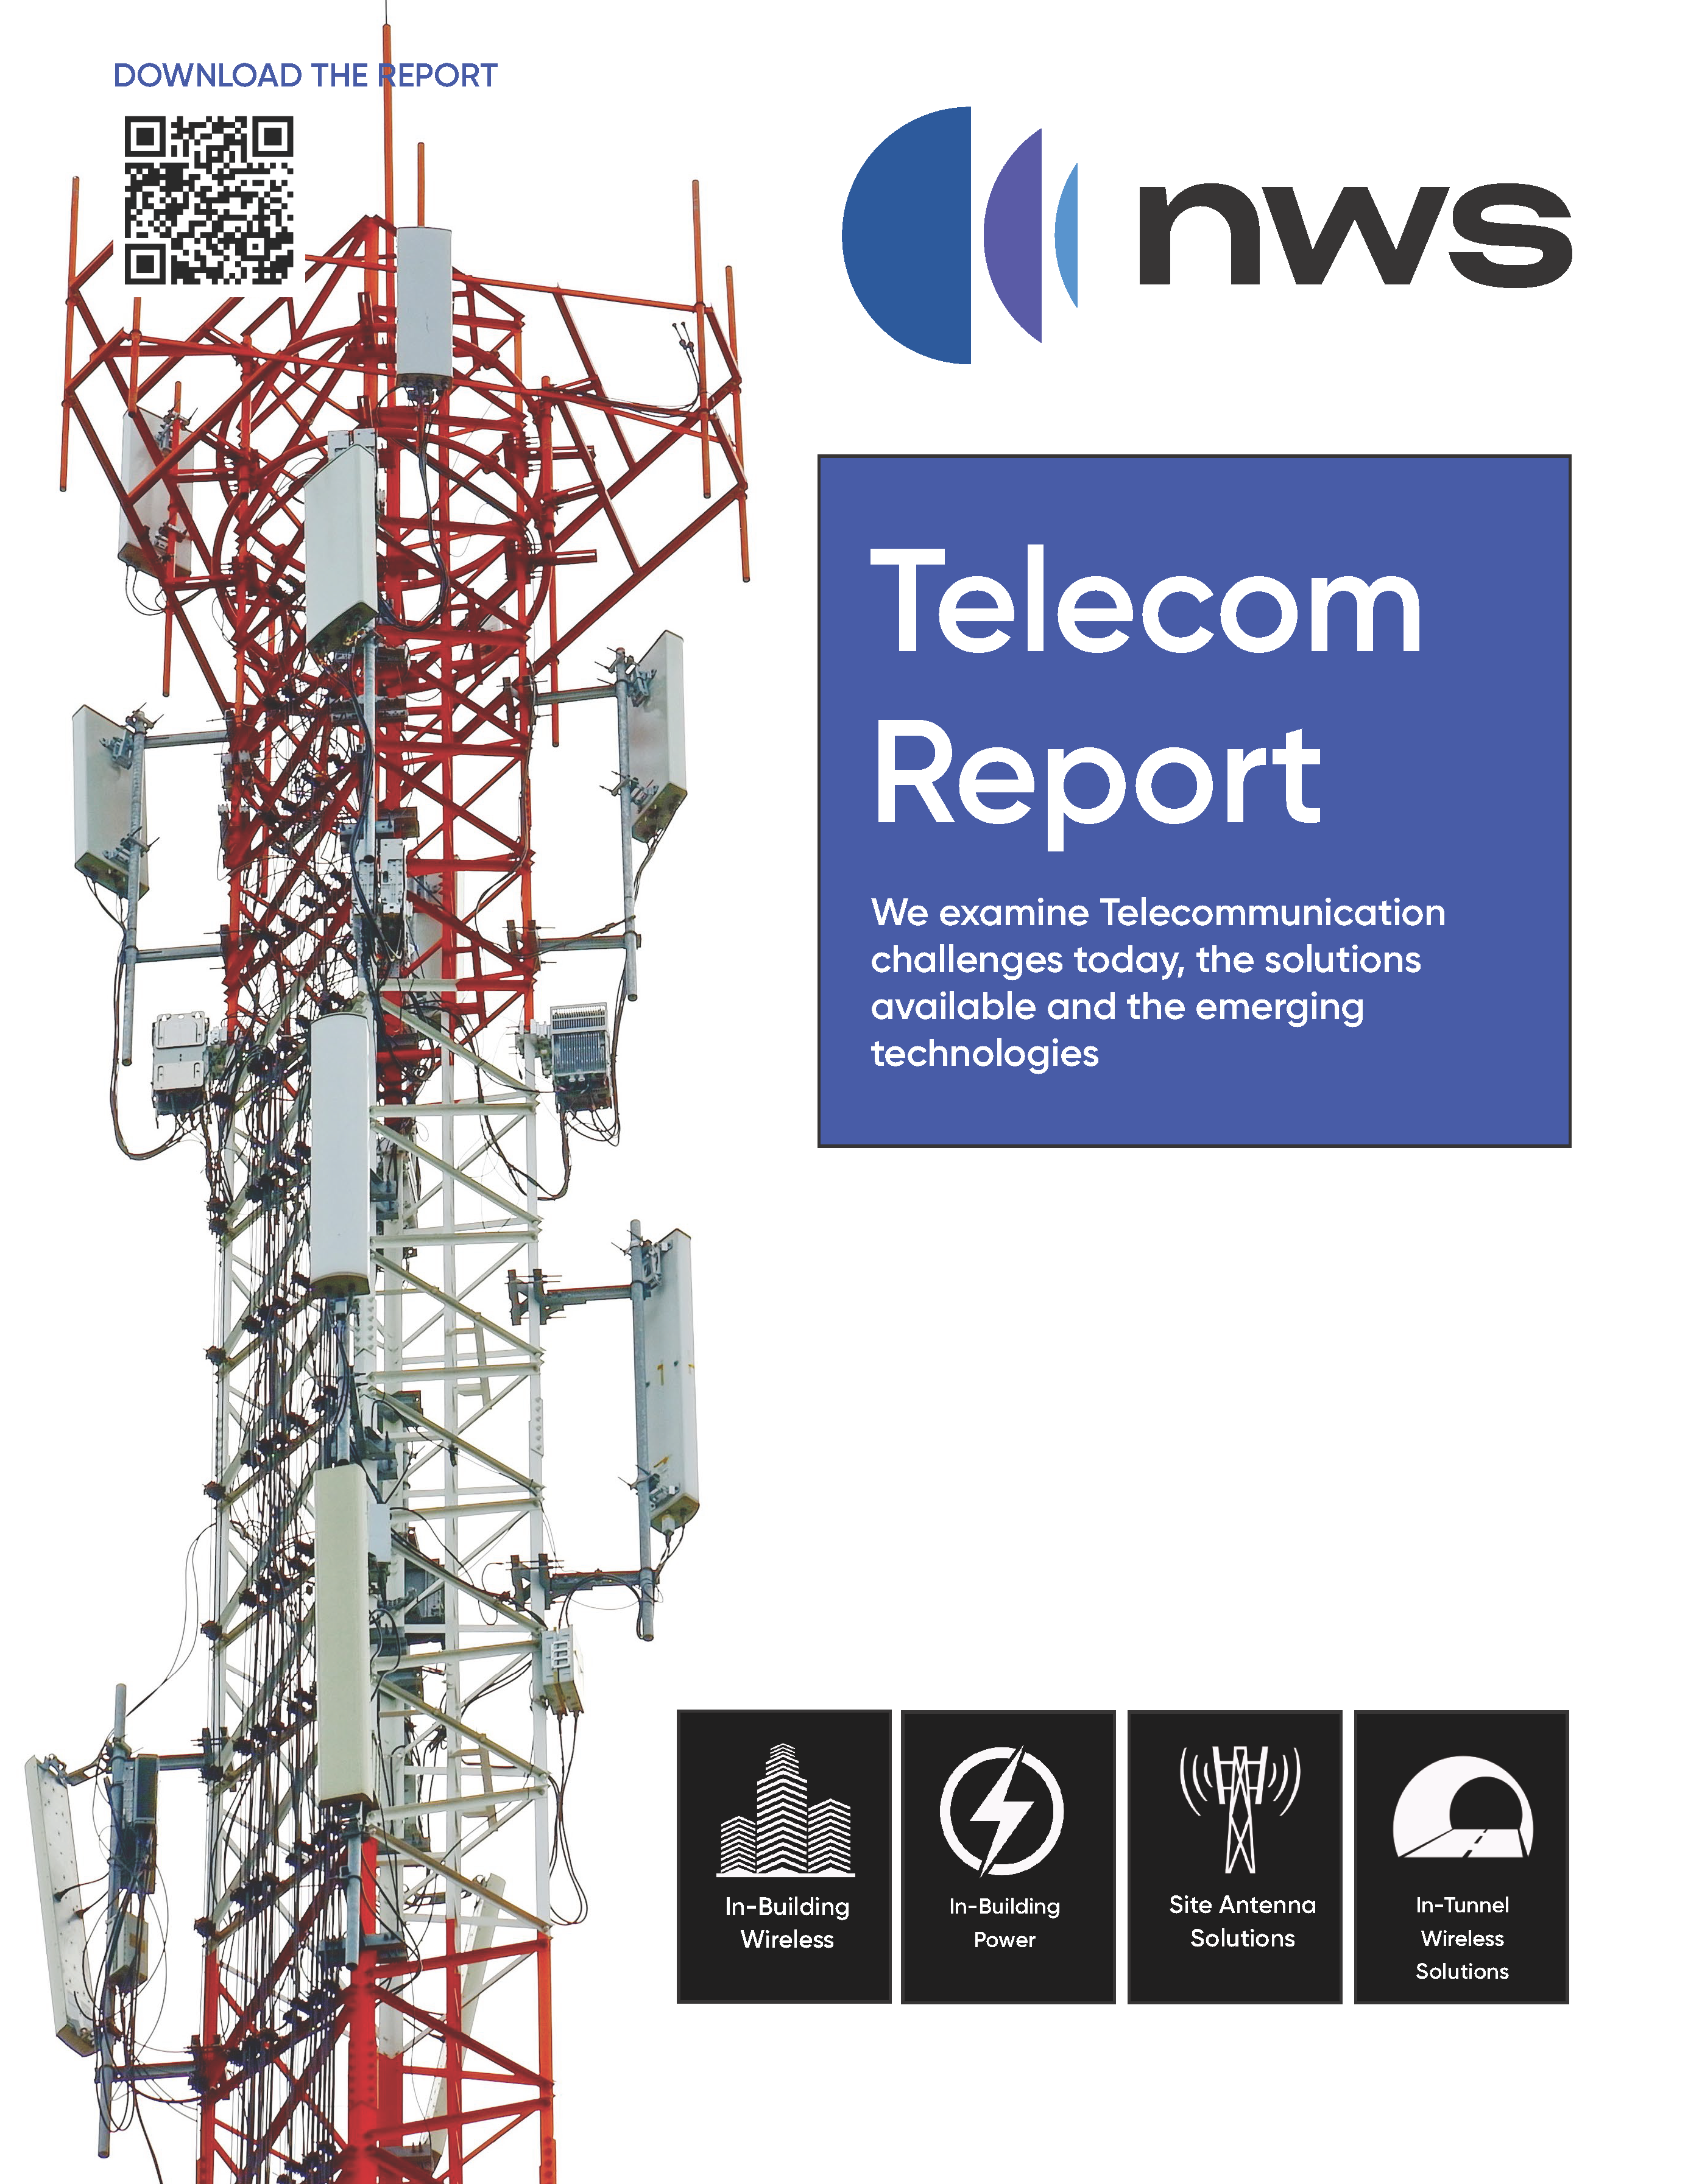 NWS Telecom